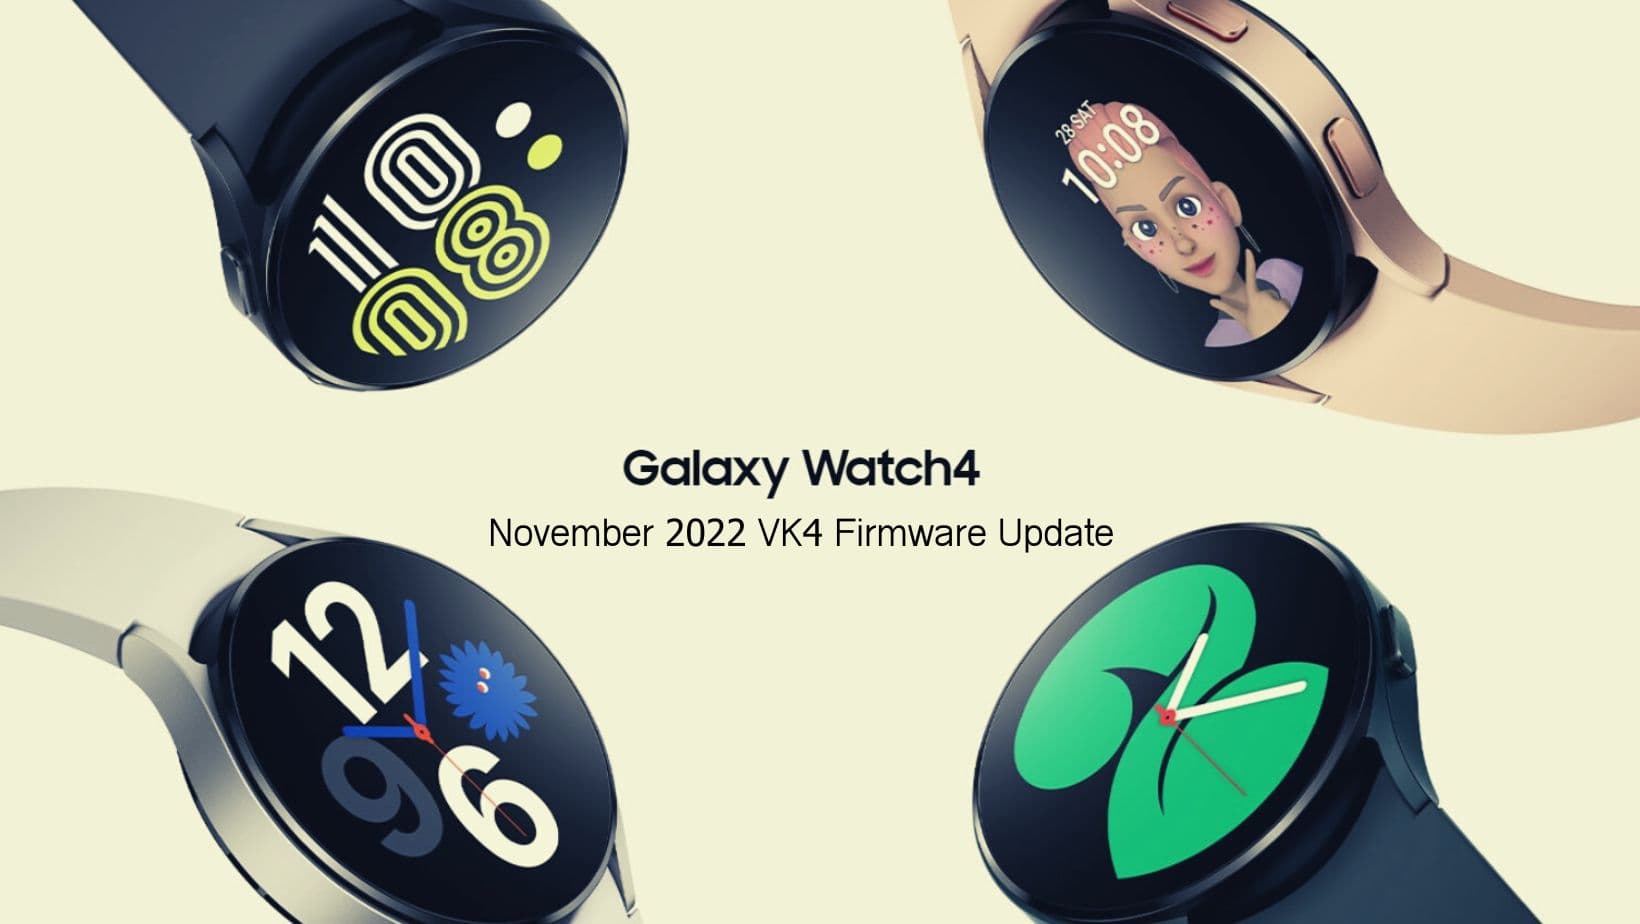 Samsung Galaxy Watch 4 VK4 November 2022 Software Update Brick Issue Hotfix